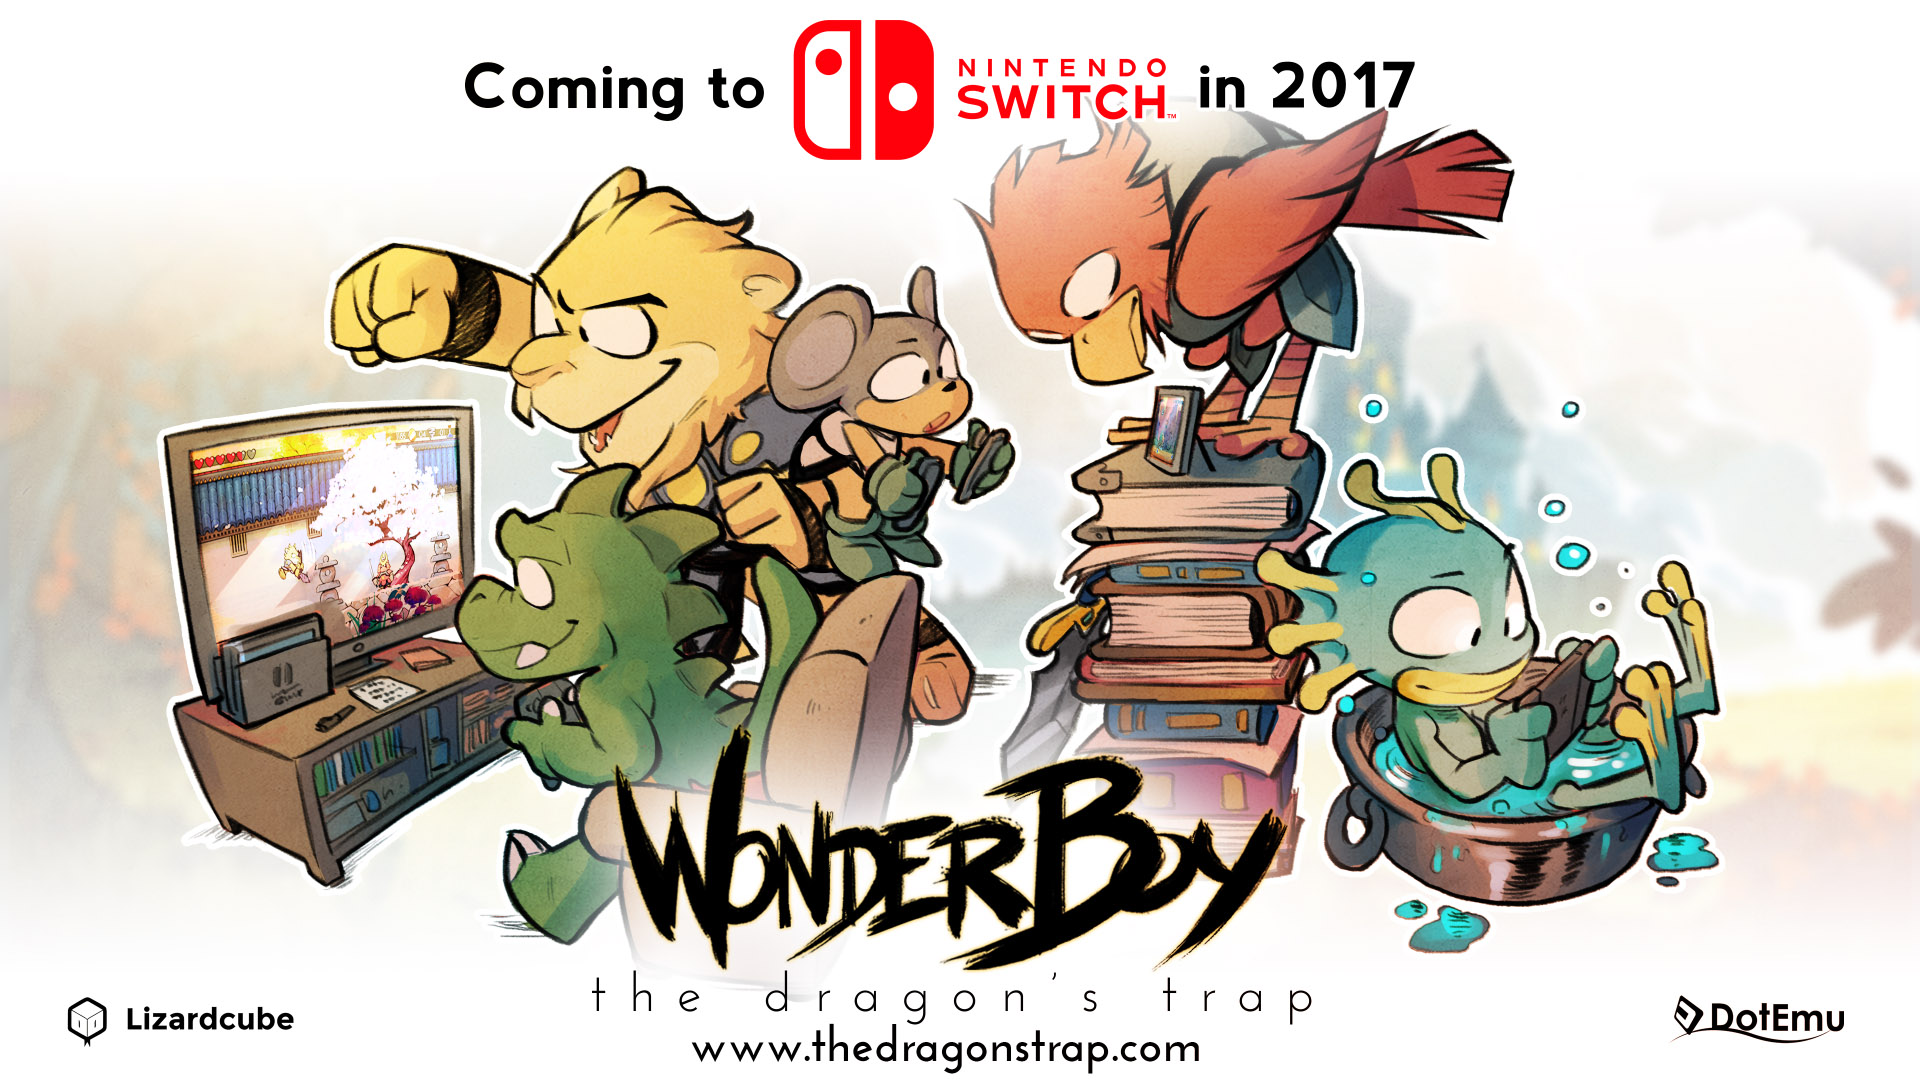 Wonder Boy: The Dragon's Trap file size